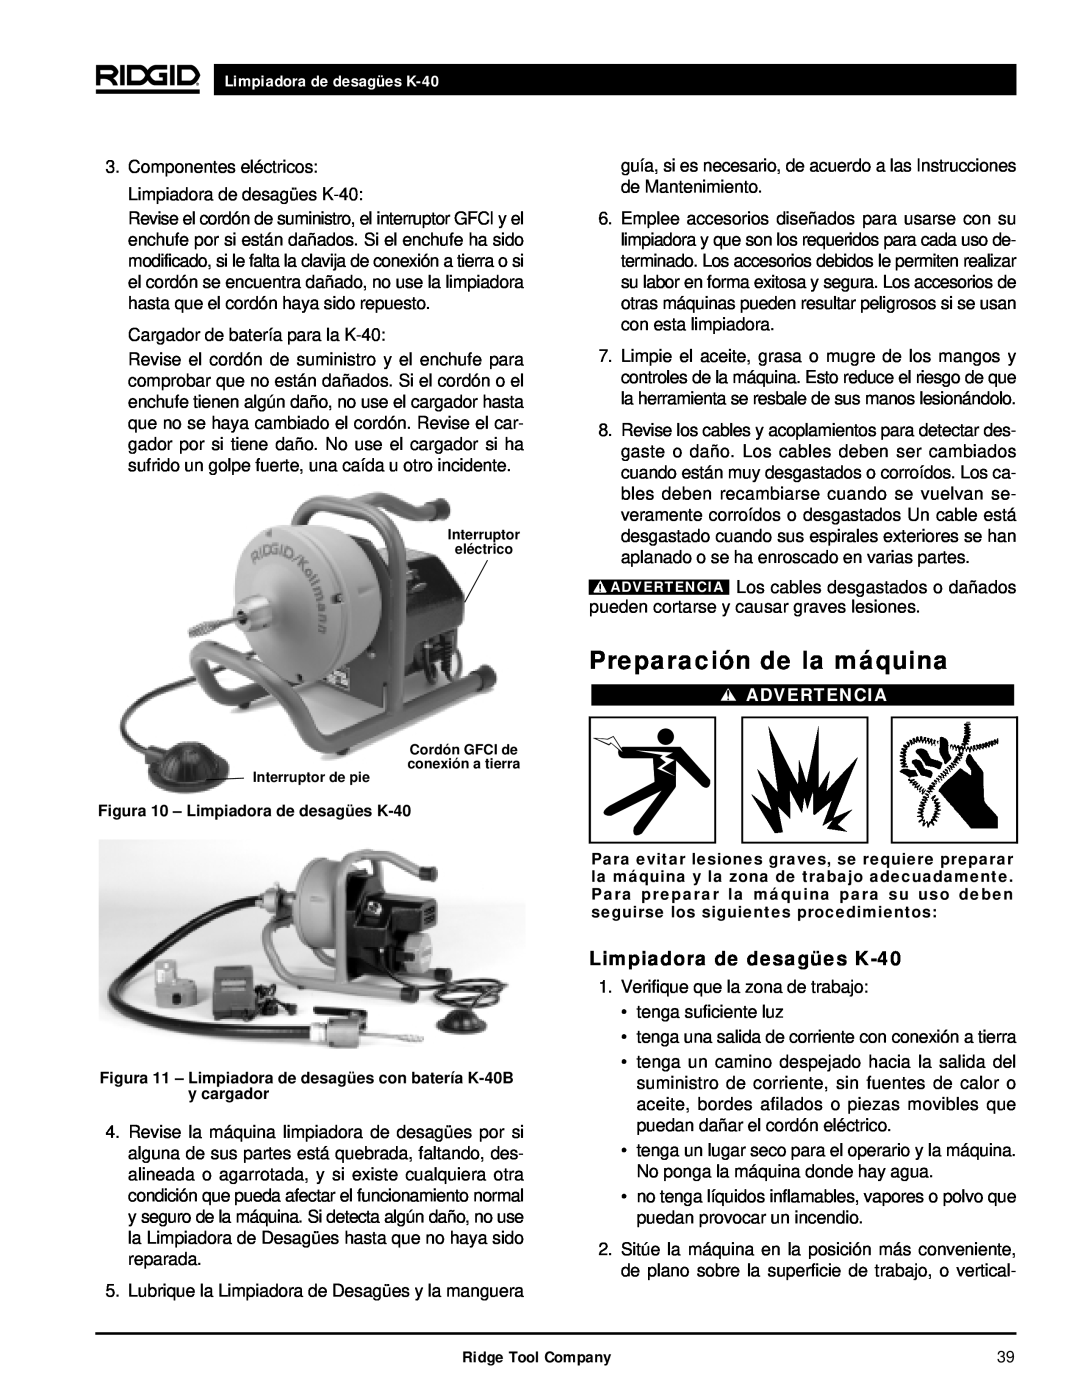 RIDGID K-40G PF, K-40B manual Preparación de la máquina, Limpiadora de desagües K-40, Advertencia 